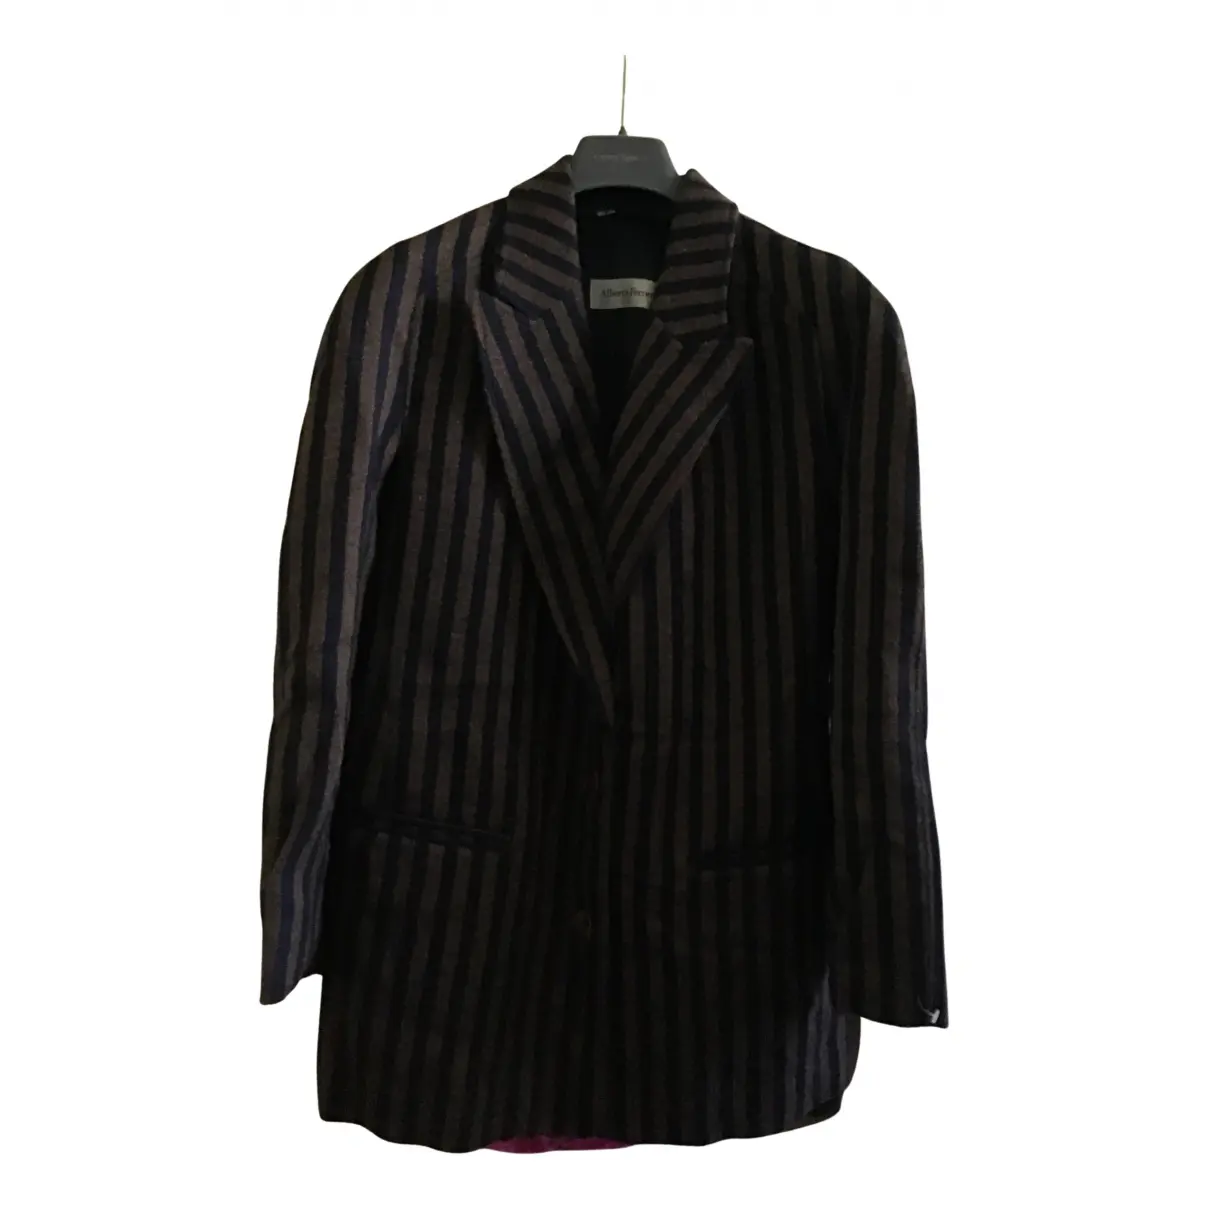 Wool suit jacket Alberta Ferretti - Vintage